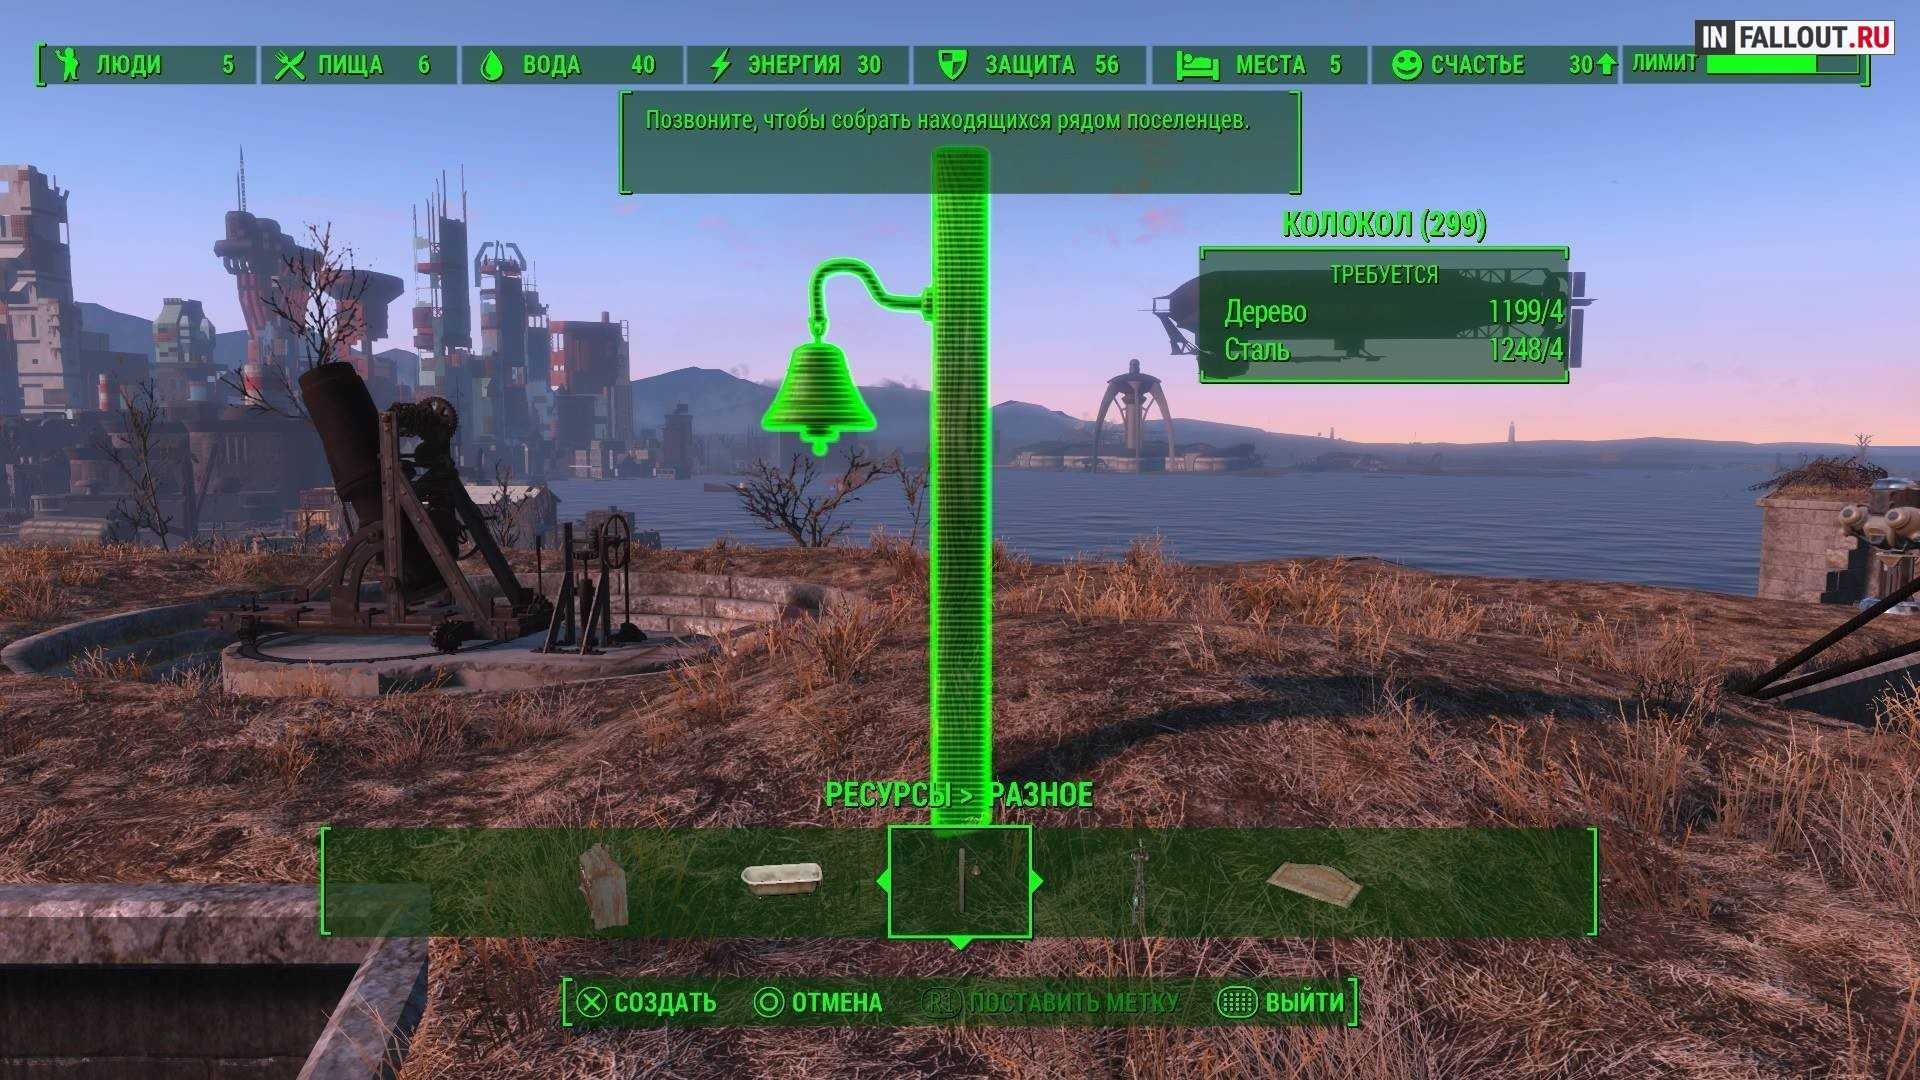 Fallout 4 команды для поселенцев (117) фото